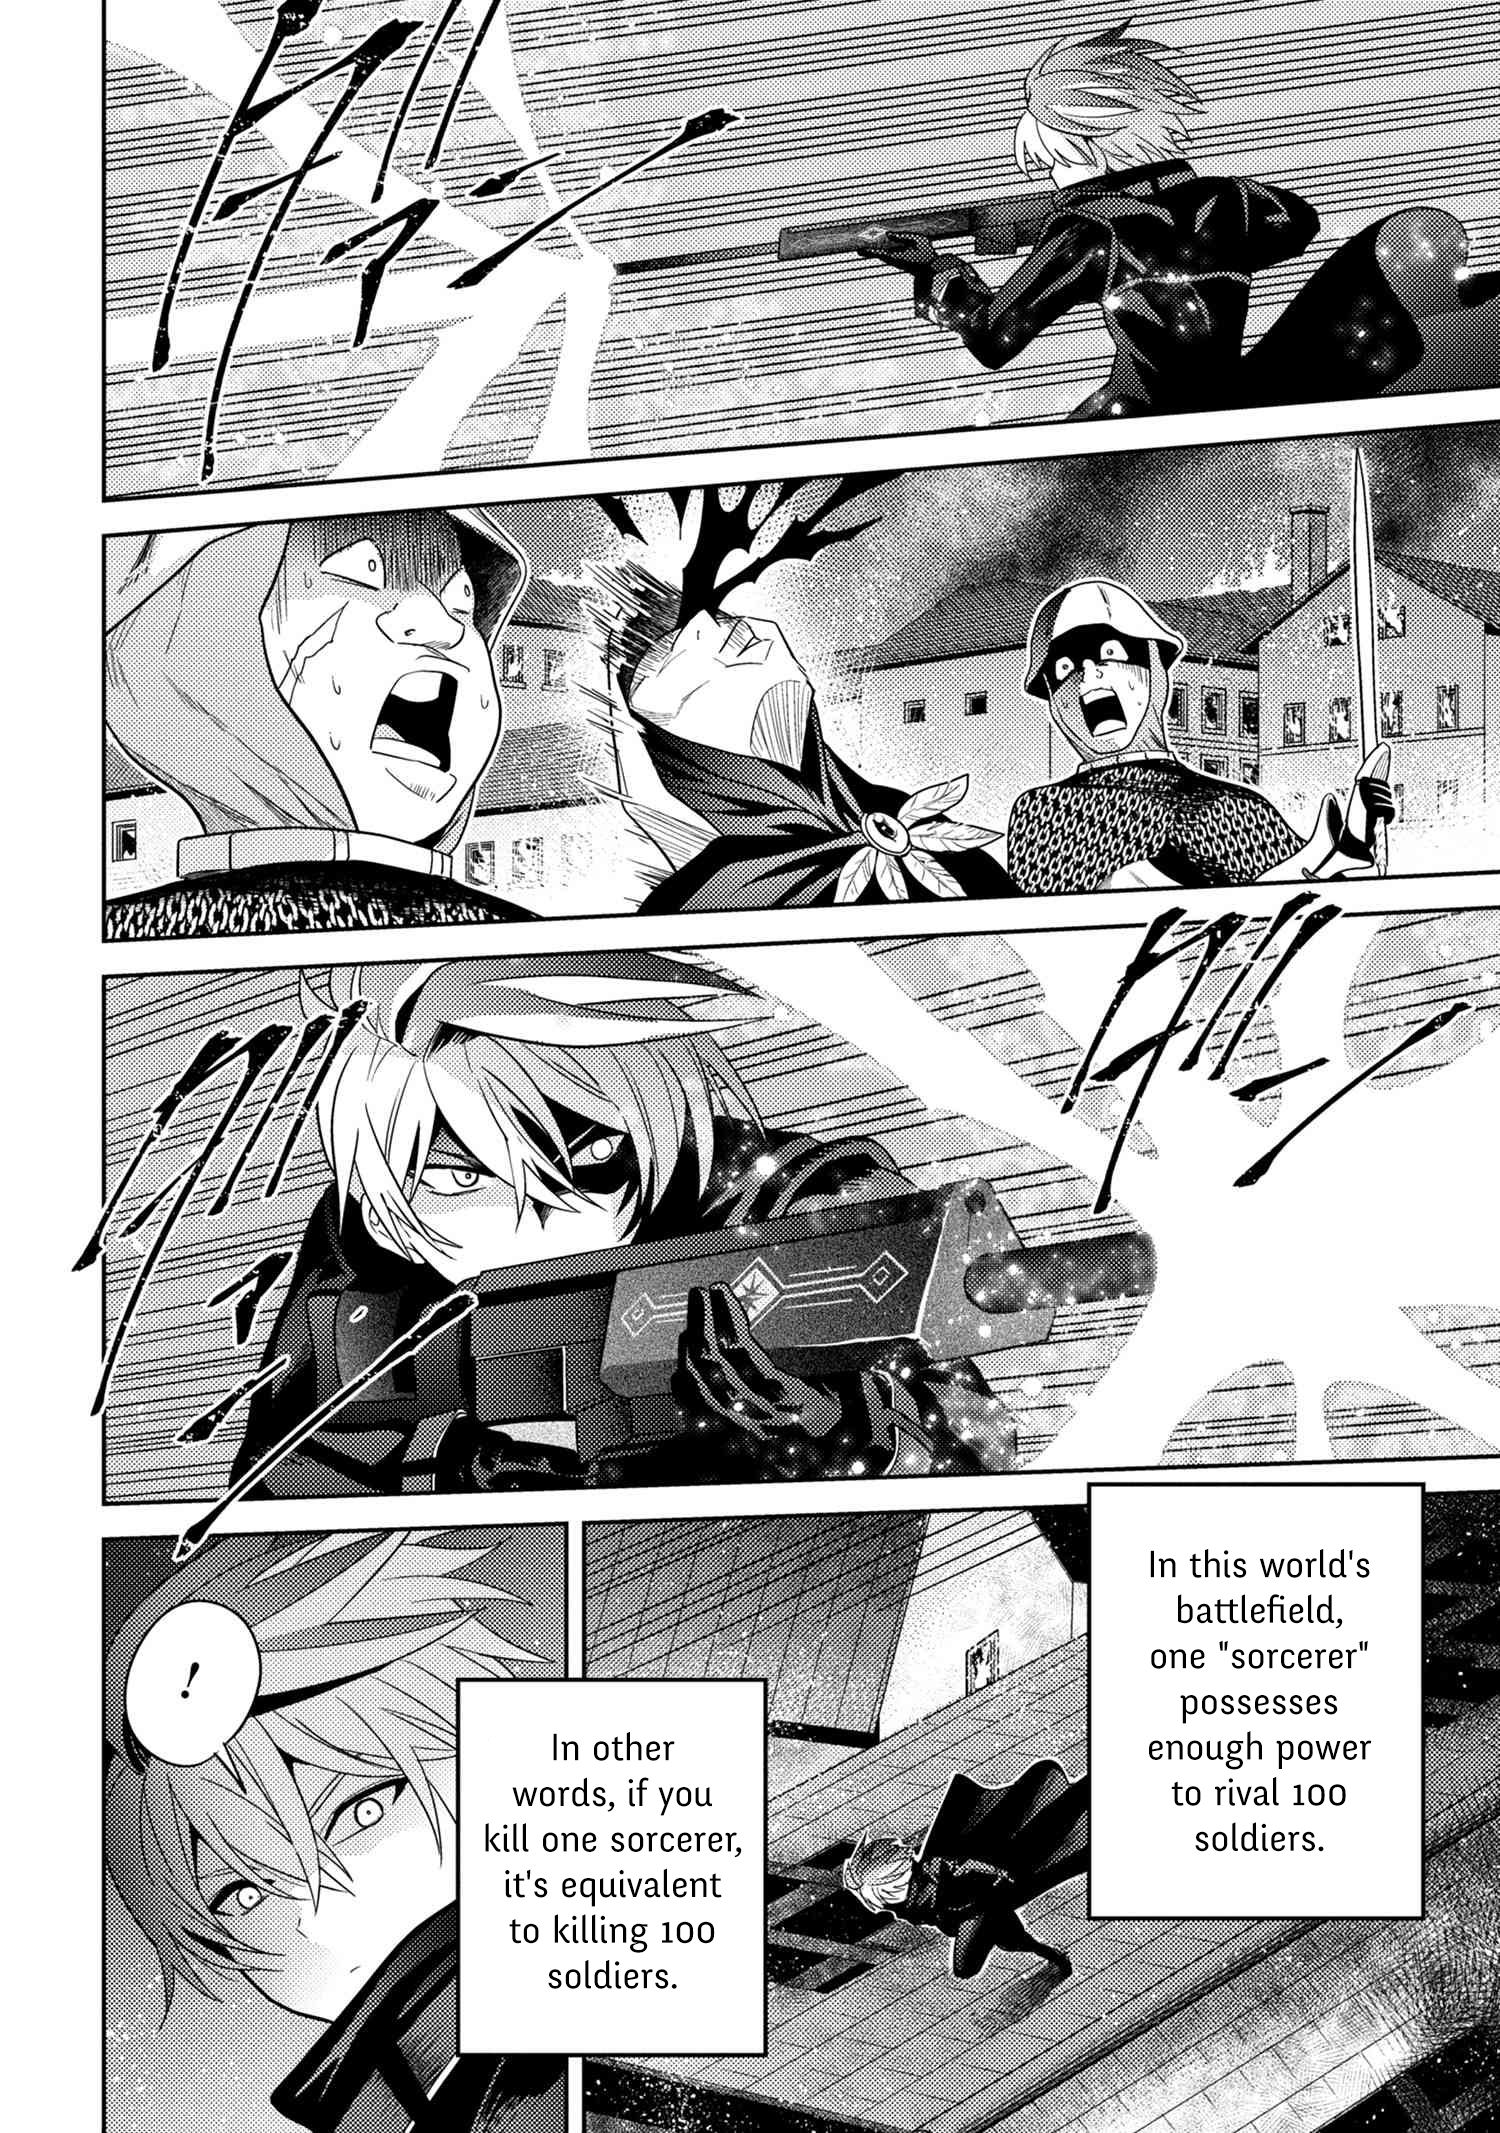 Read Sekai Saikyou no Assassin, isekai kizoku ni tensei suru 7.1 - Oni Scan